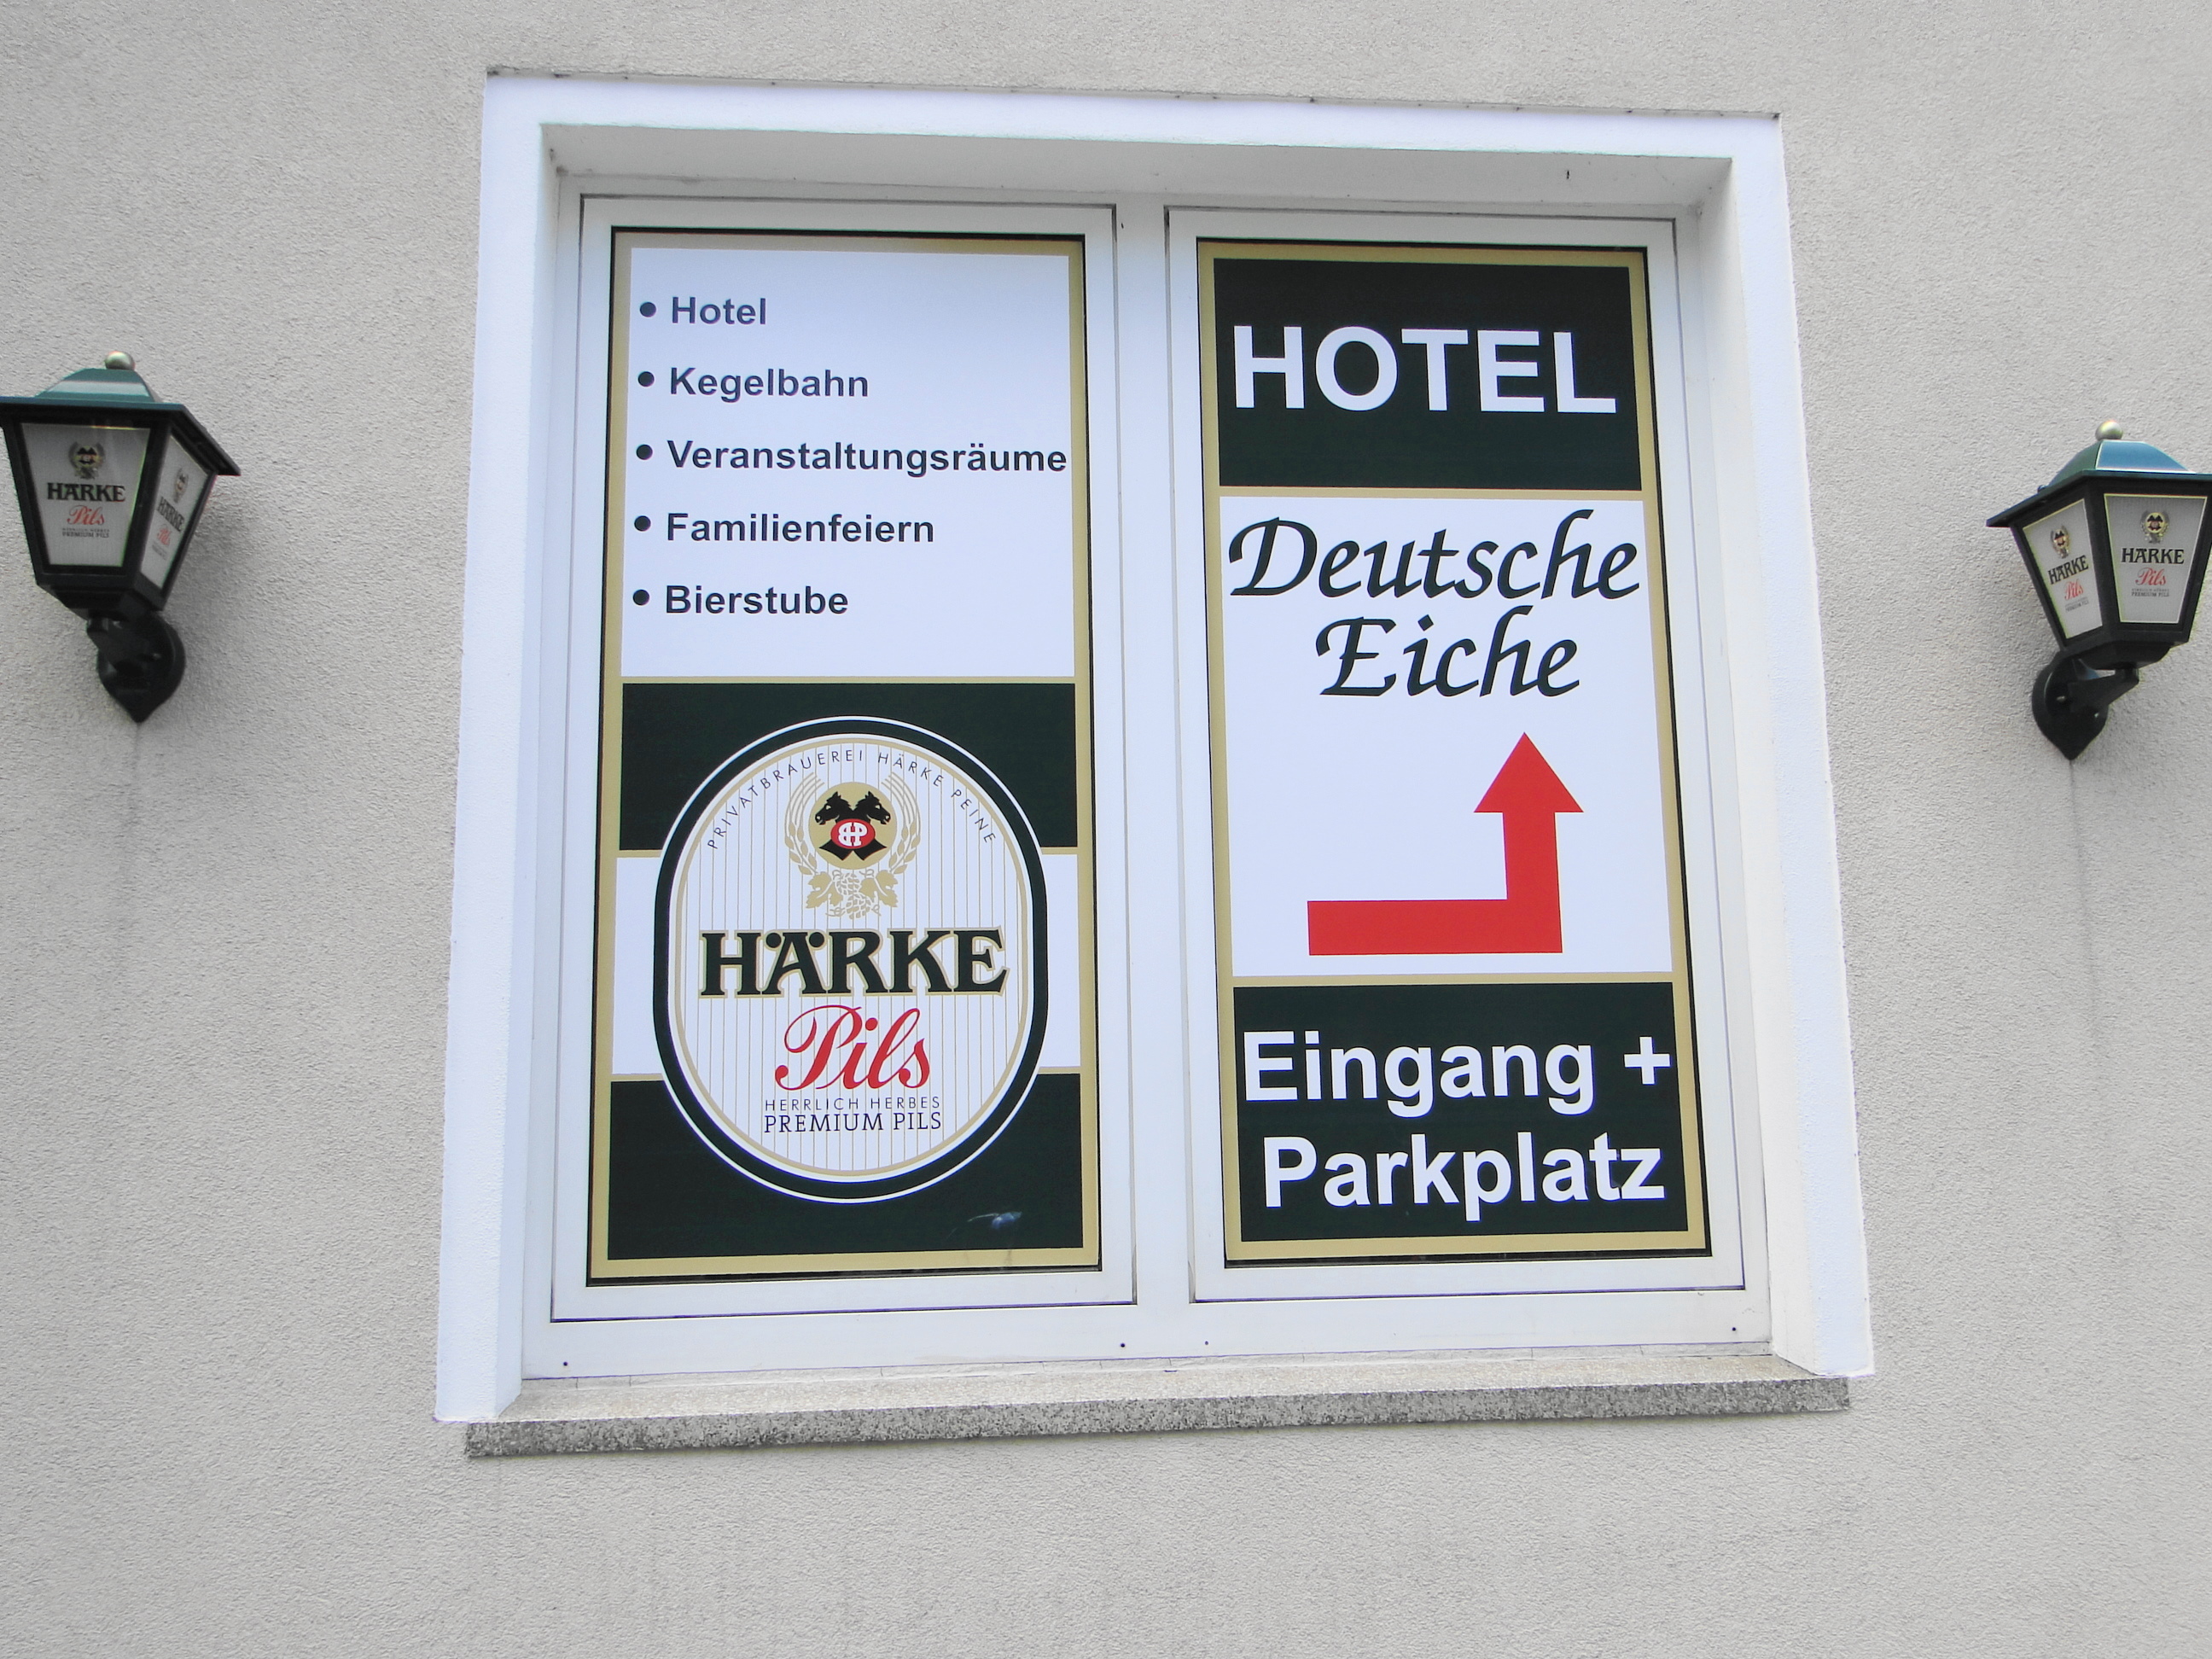 Hotel Deutsche Eiche in der Bahnhofstr. 16